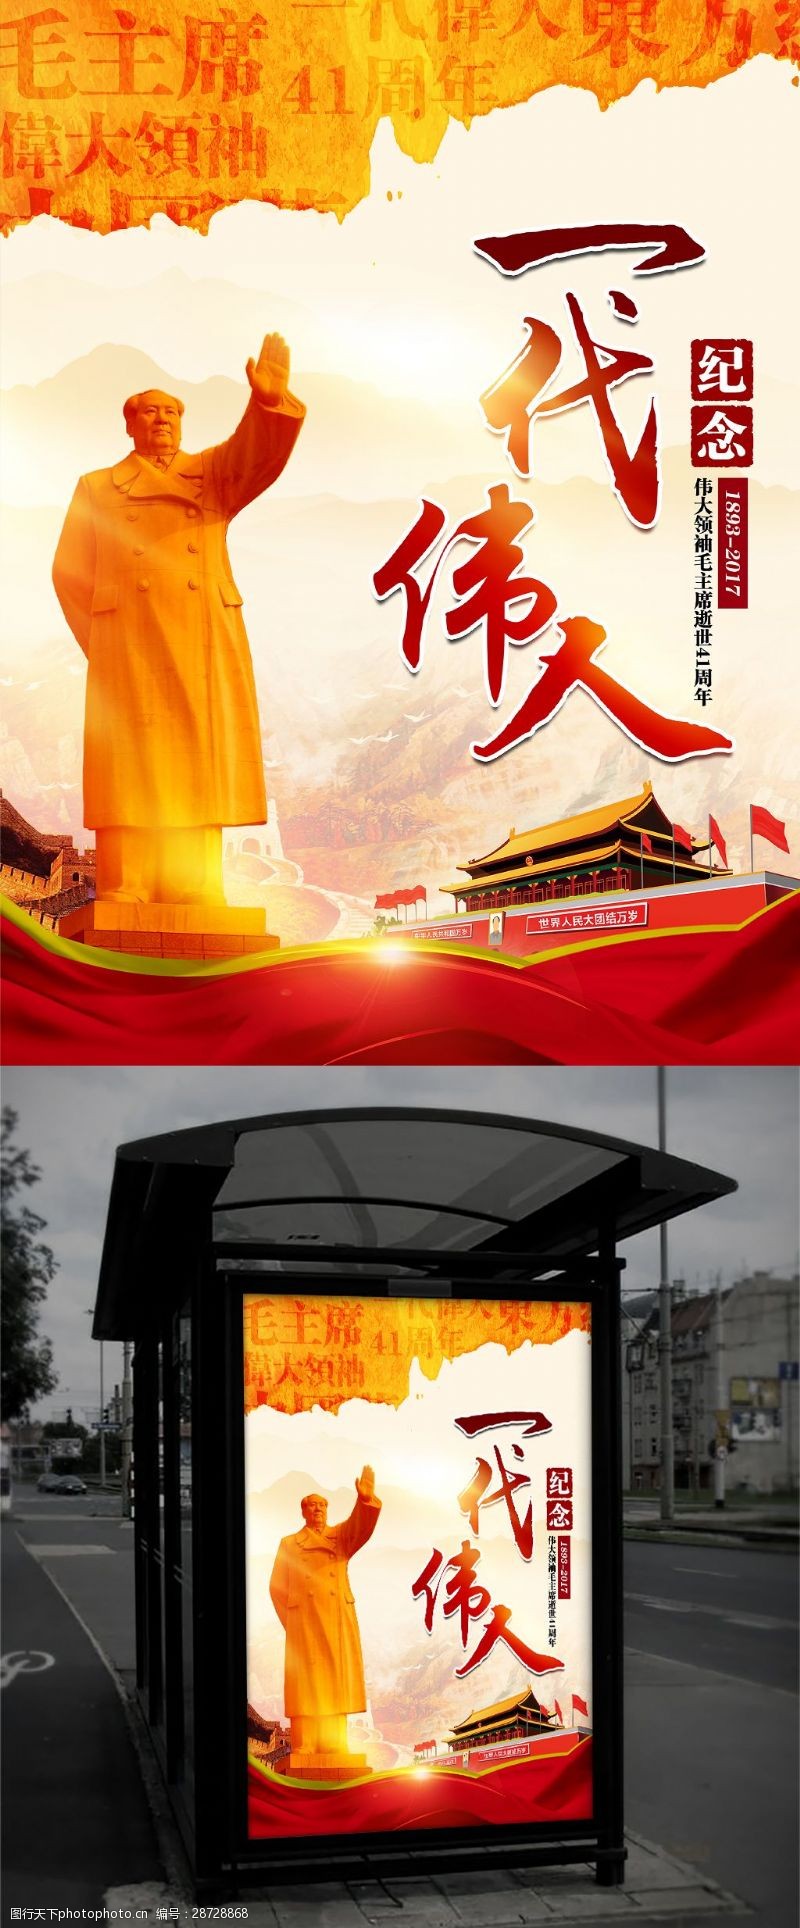 主题雕塑一代伟人纪念毛主席逝世41周年主题海报